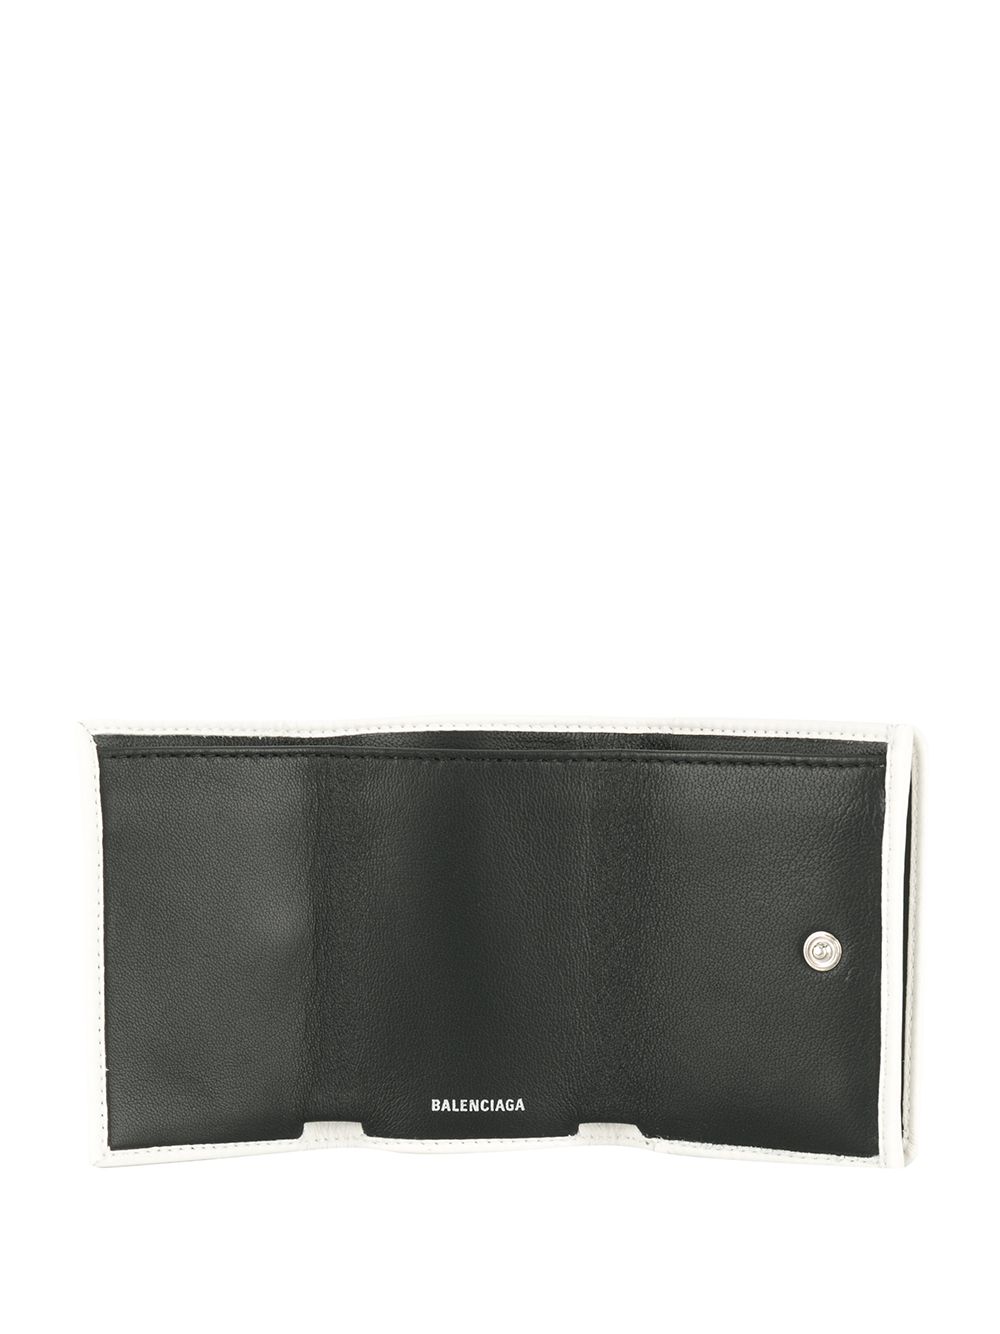 фото Balenciaga мини-кошелек Everyday с логотипом